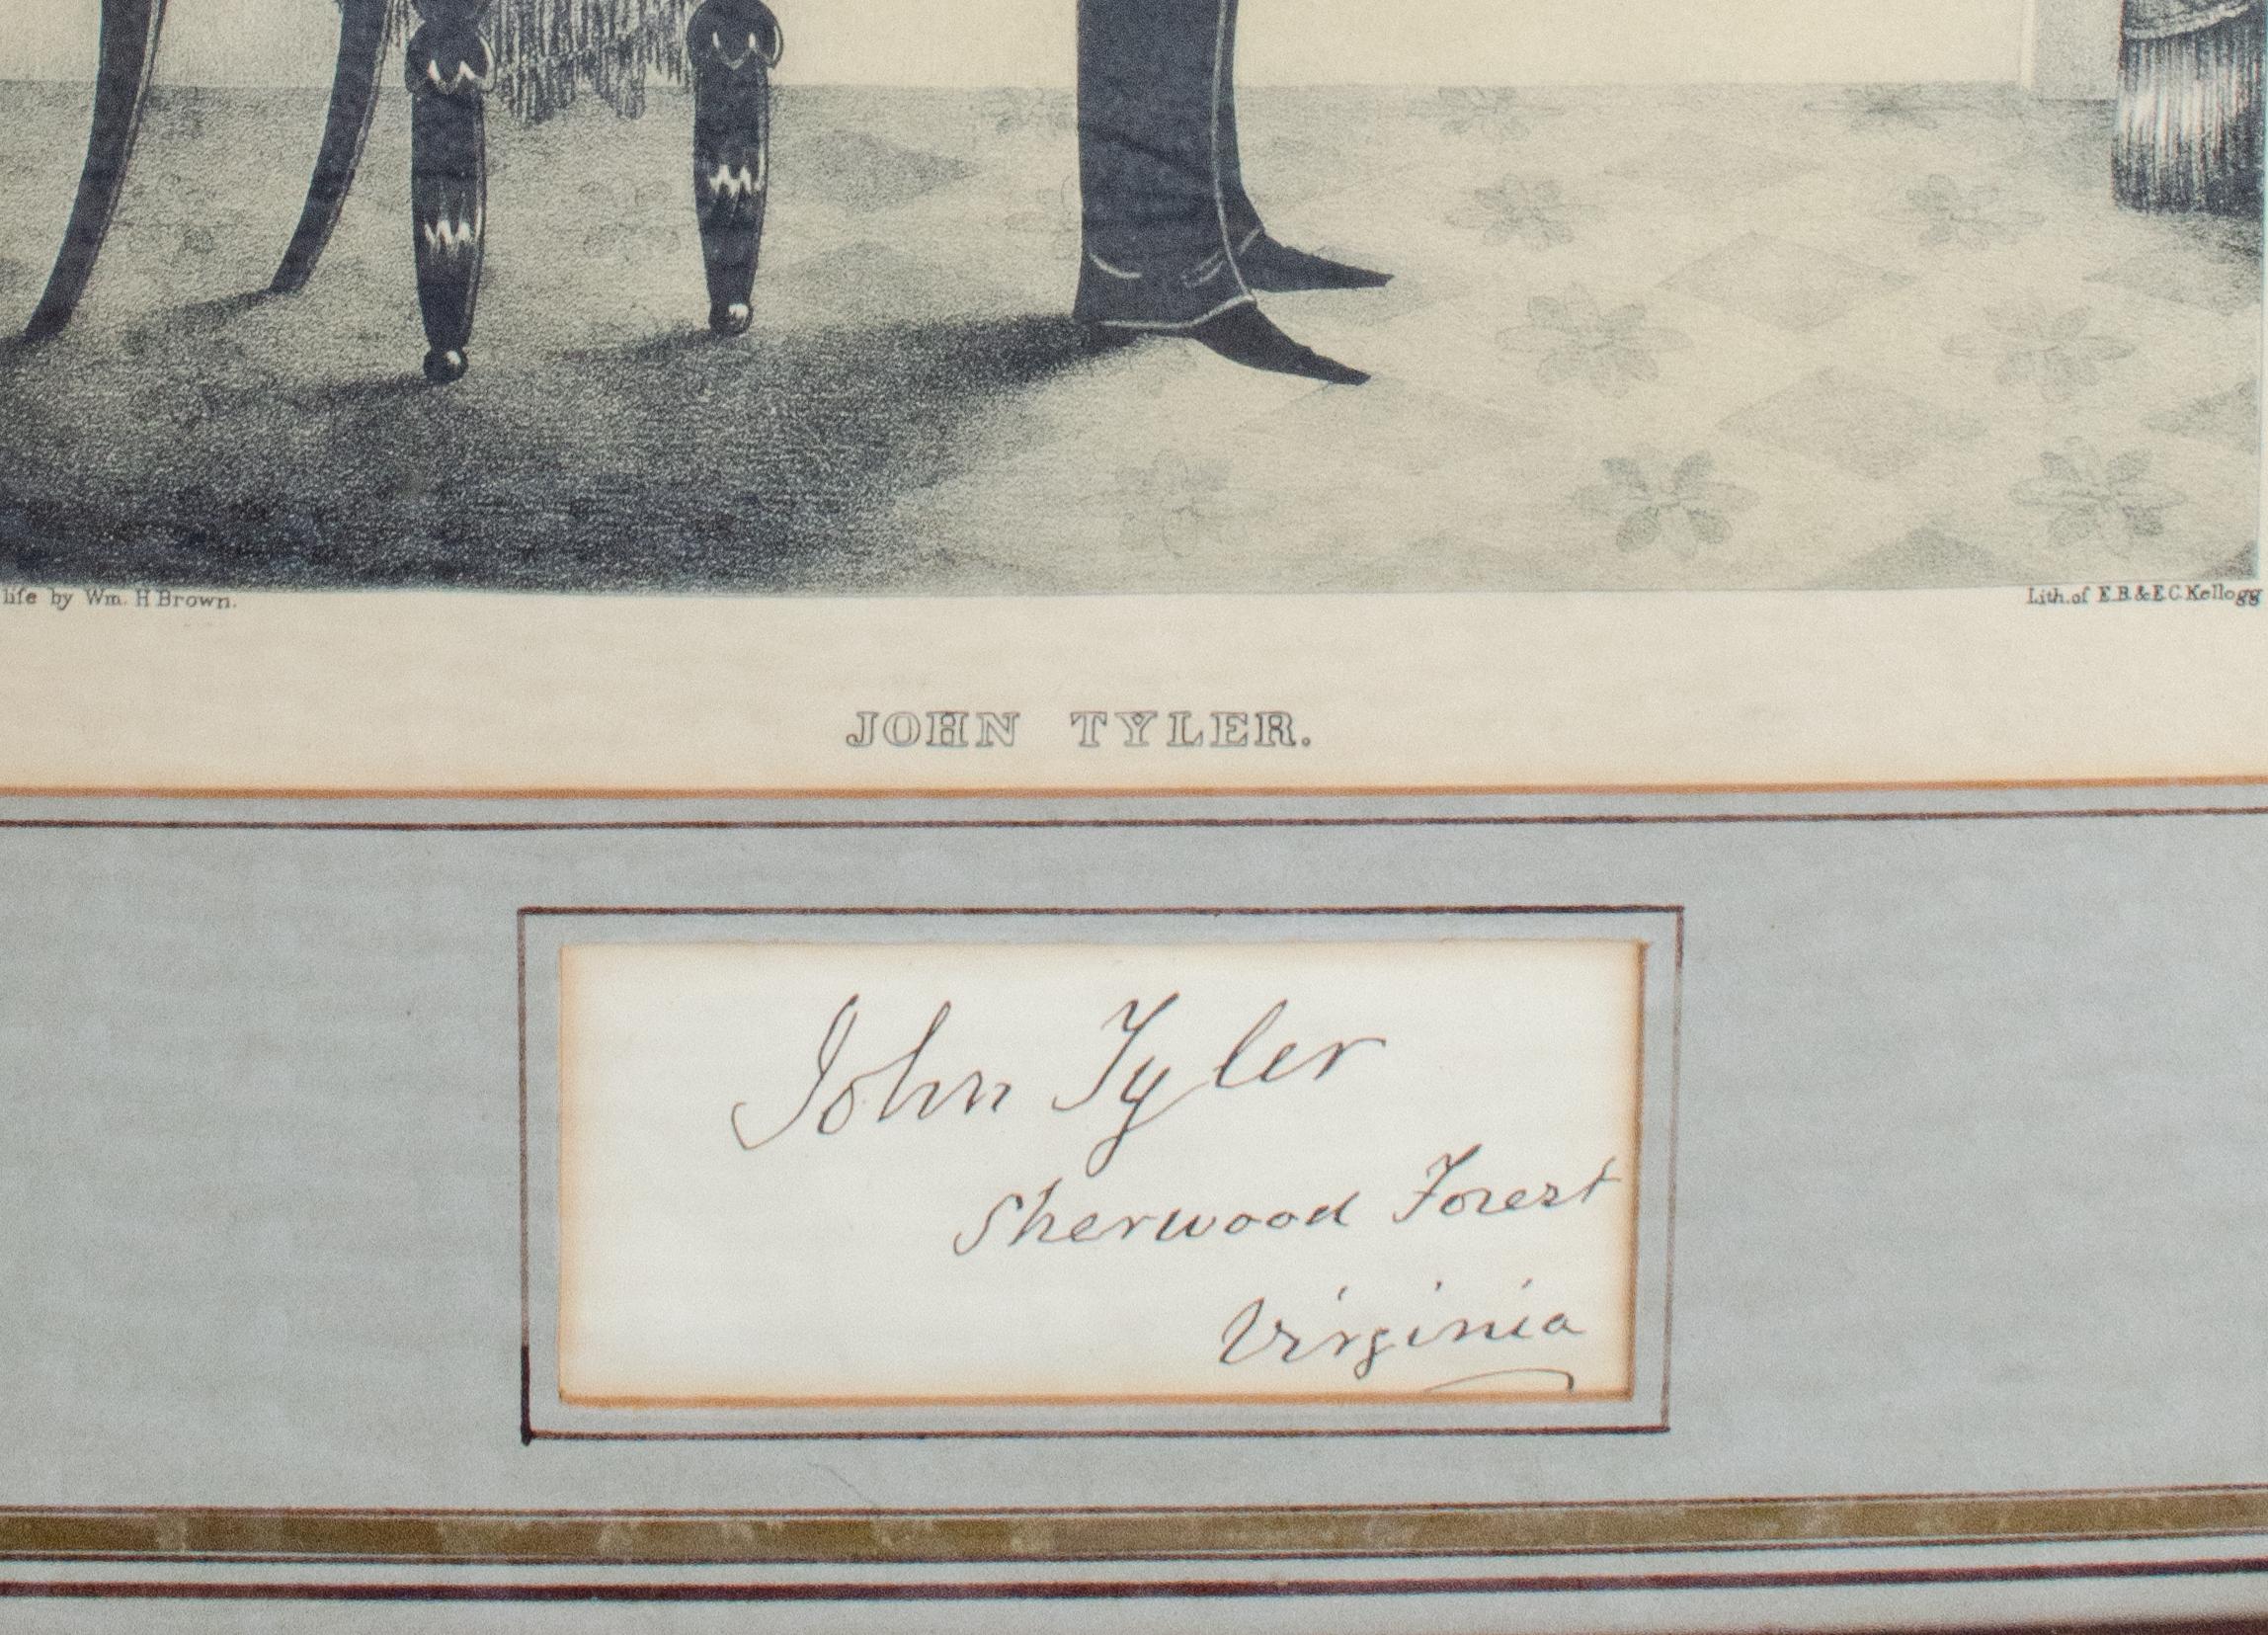 Portrait présidentielle de John Tyler par William Henry Brown - Print de William H Brown